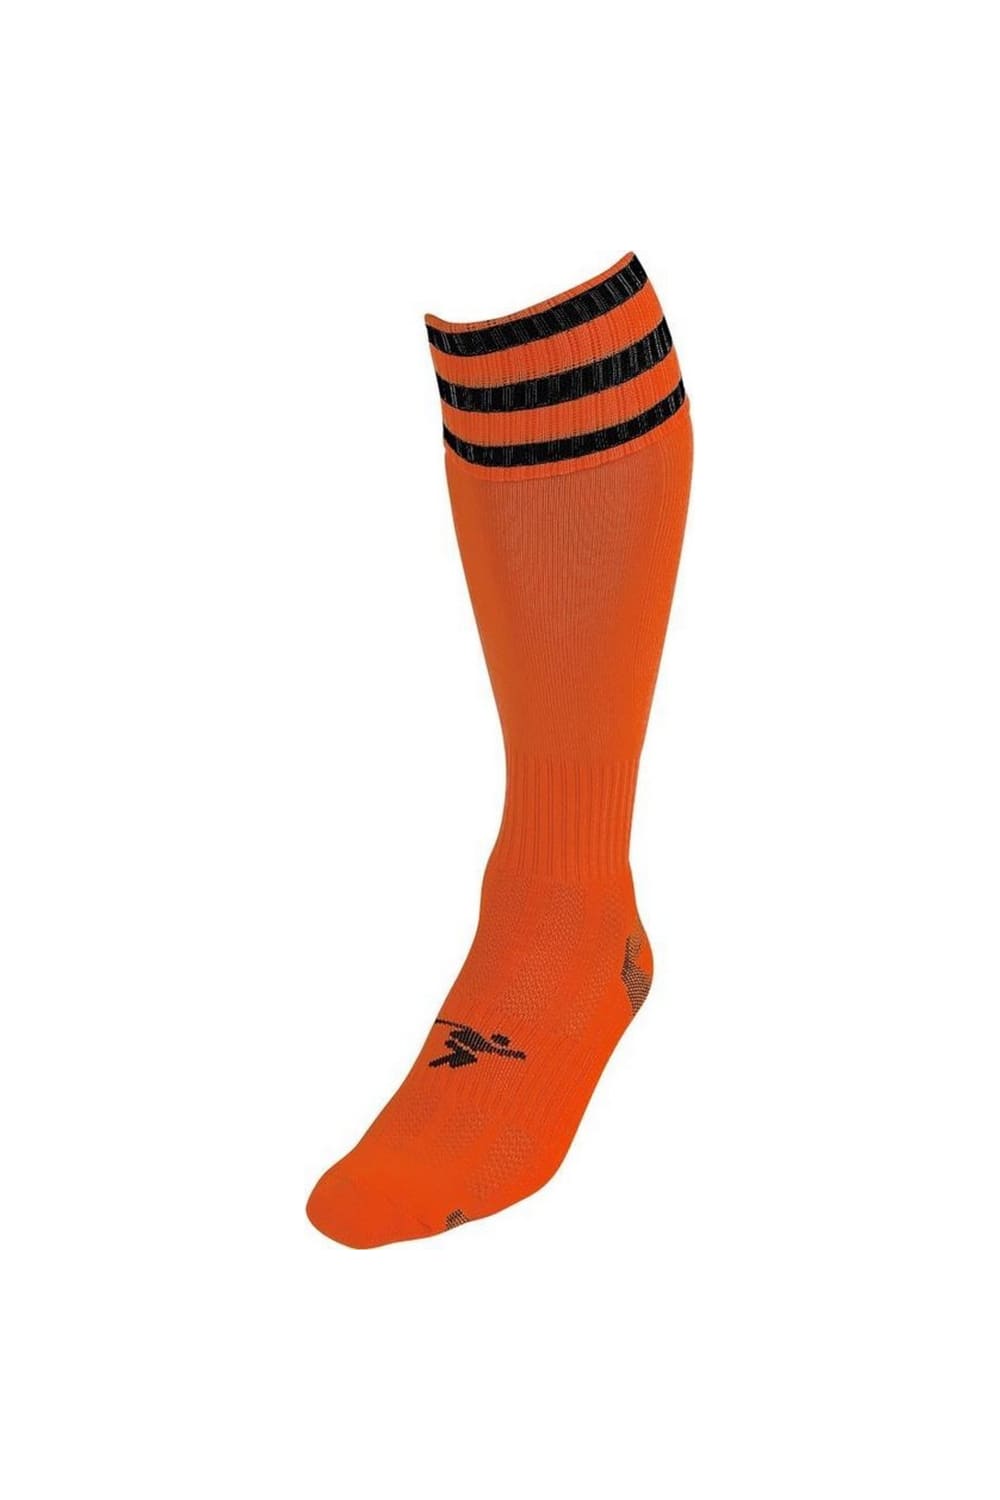 Precision Unisex Adult Pro Football Socks (Tangerine/Black)